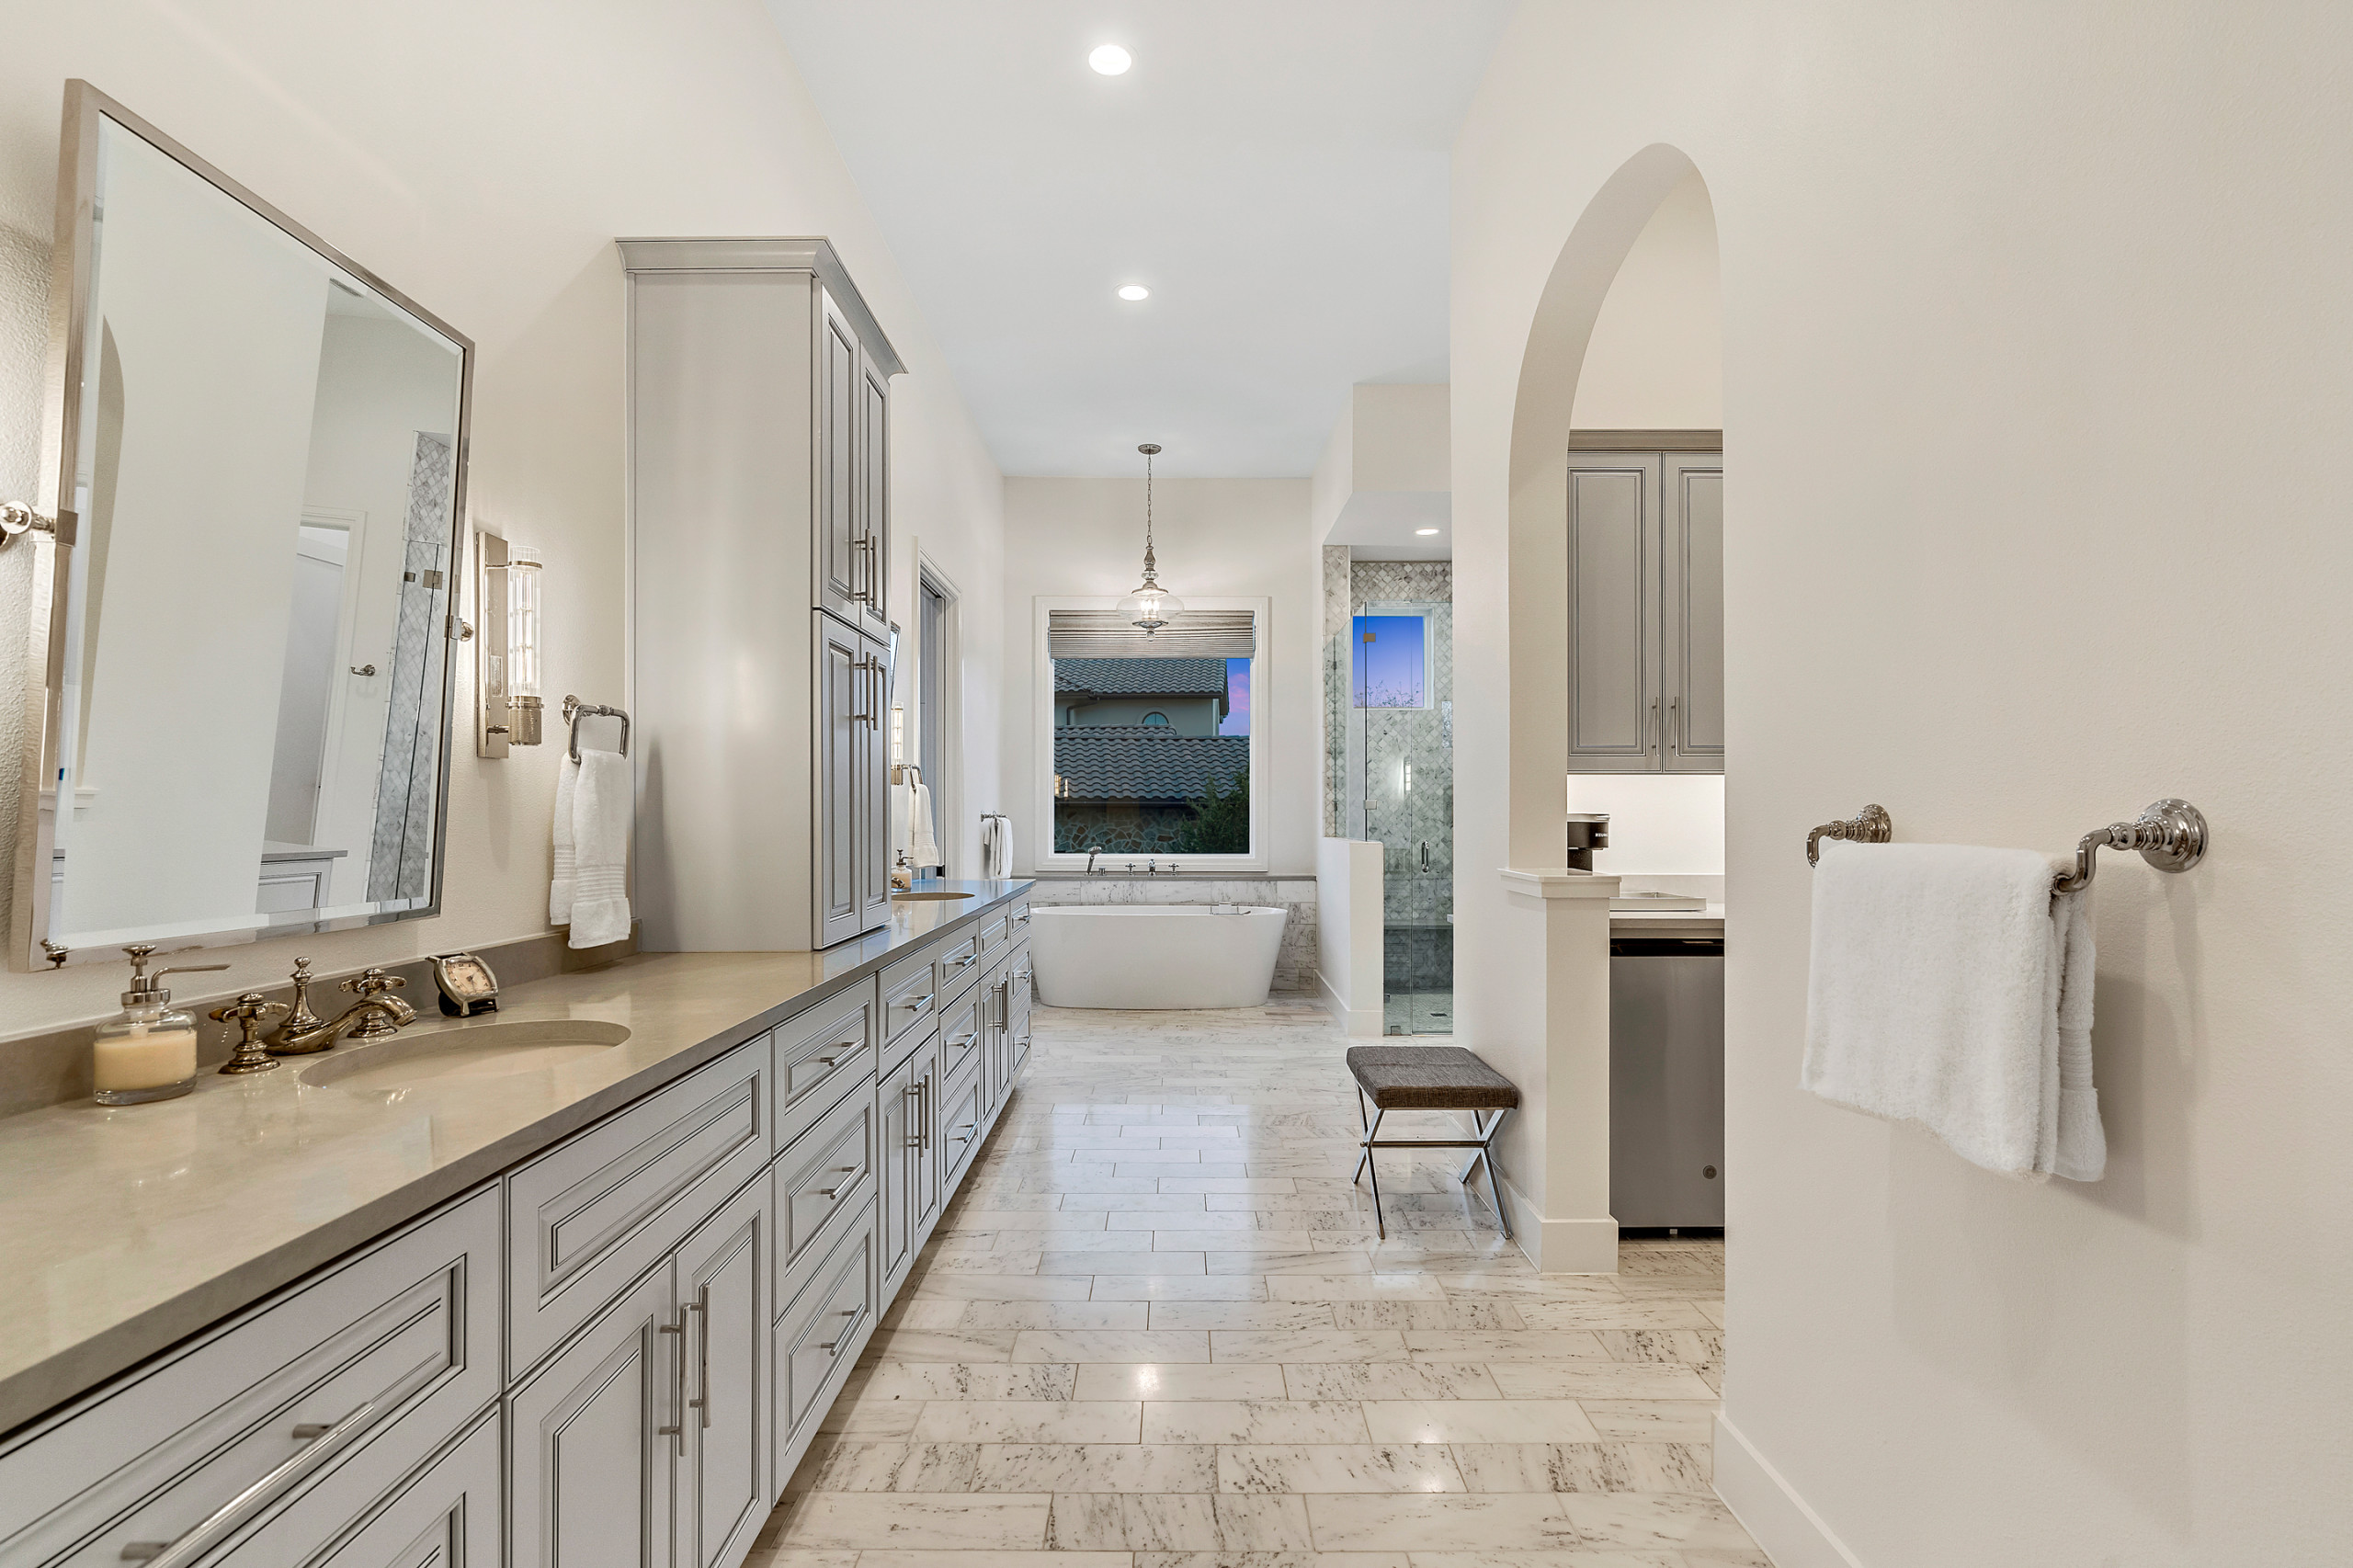 Grey and White Bath Towel by Santa Barbara